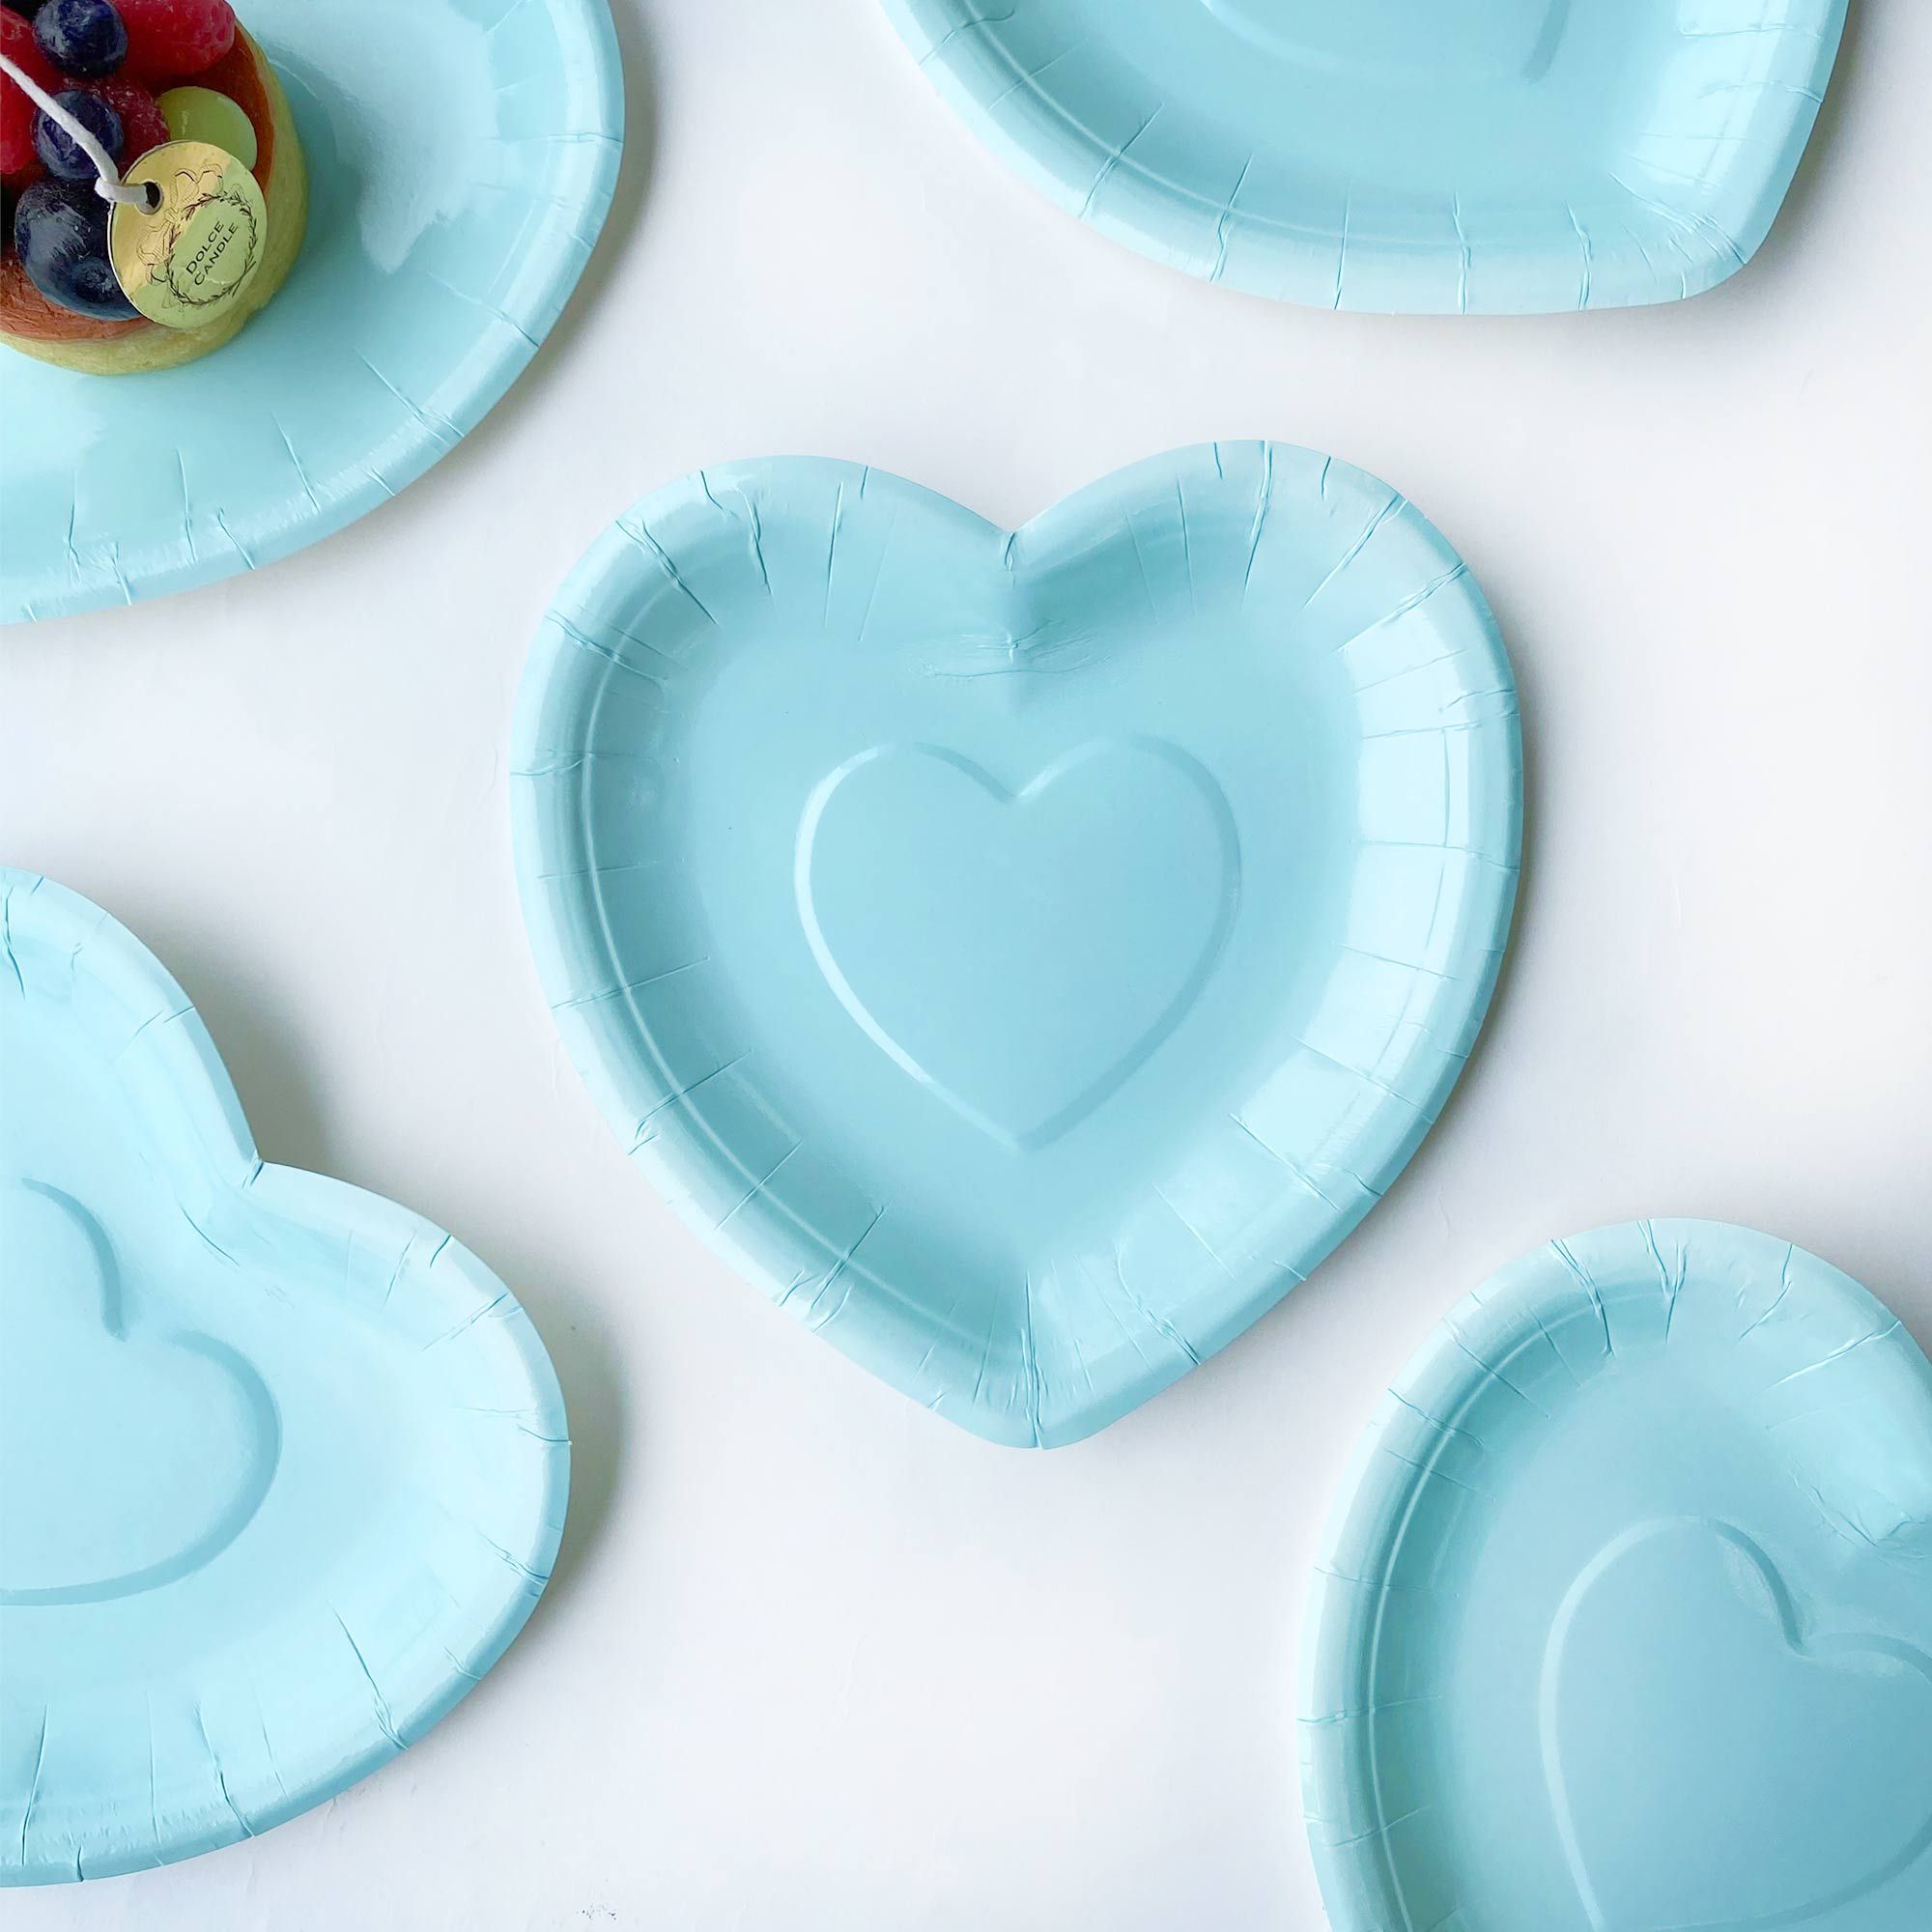 Blue Heart-shaped Cake Plate